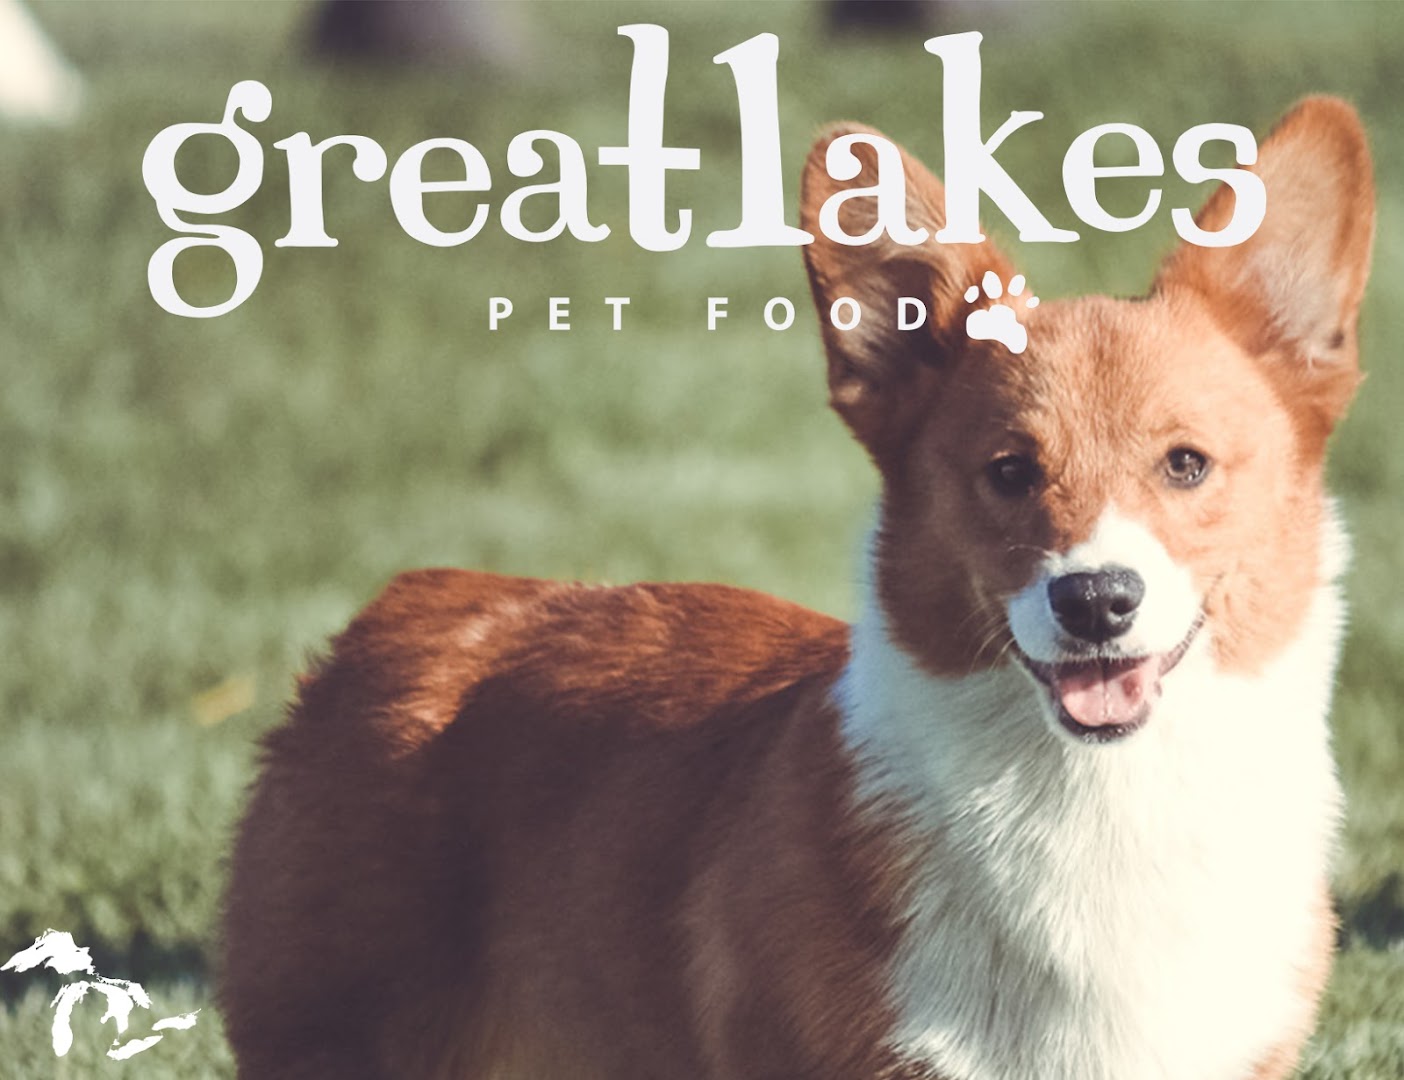 Great Lakes Pet Food